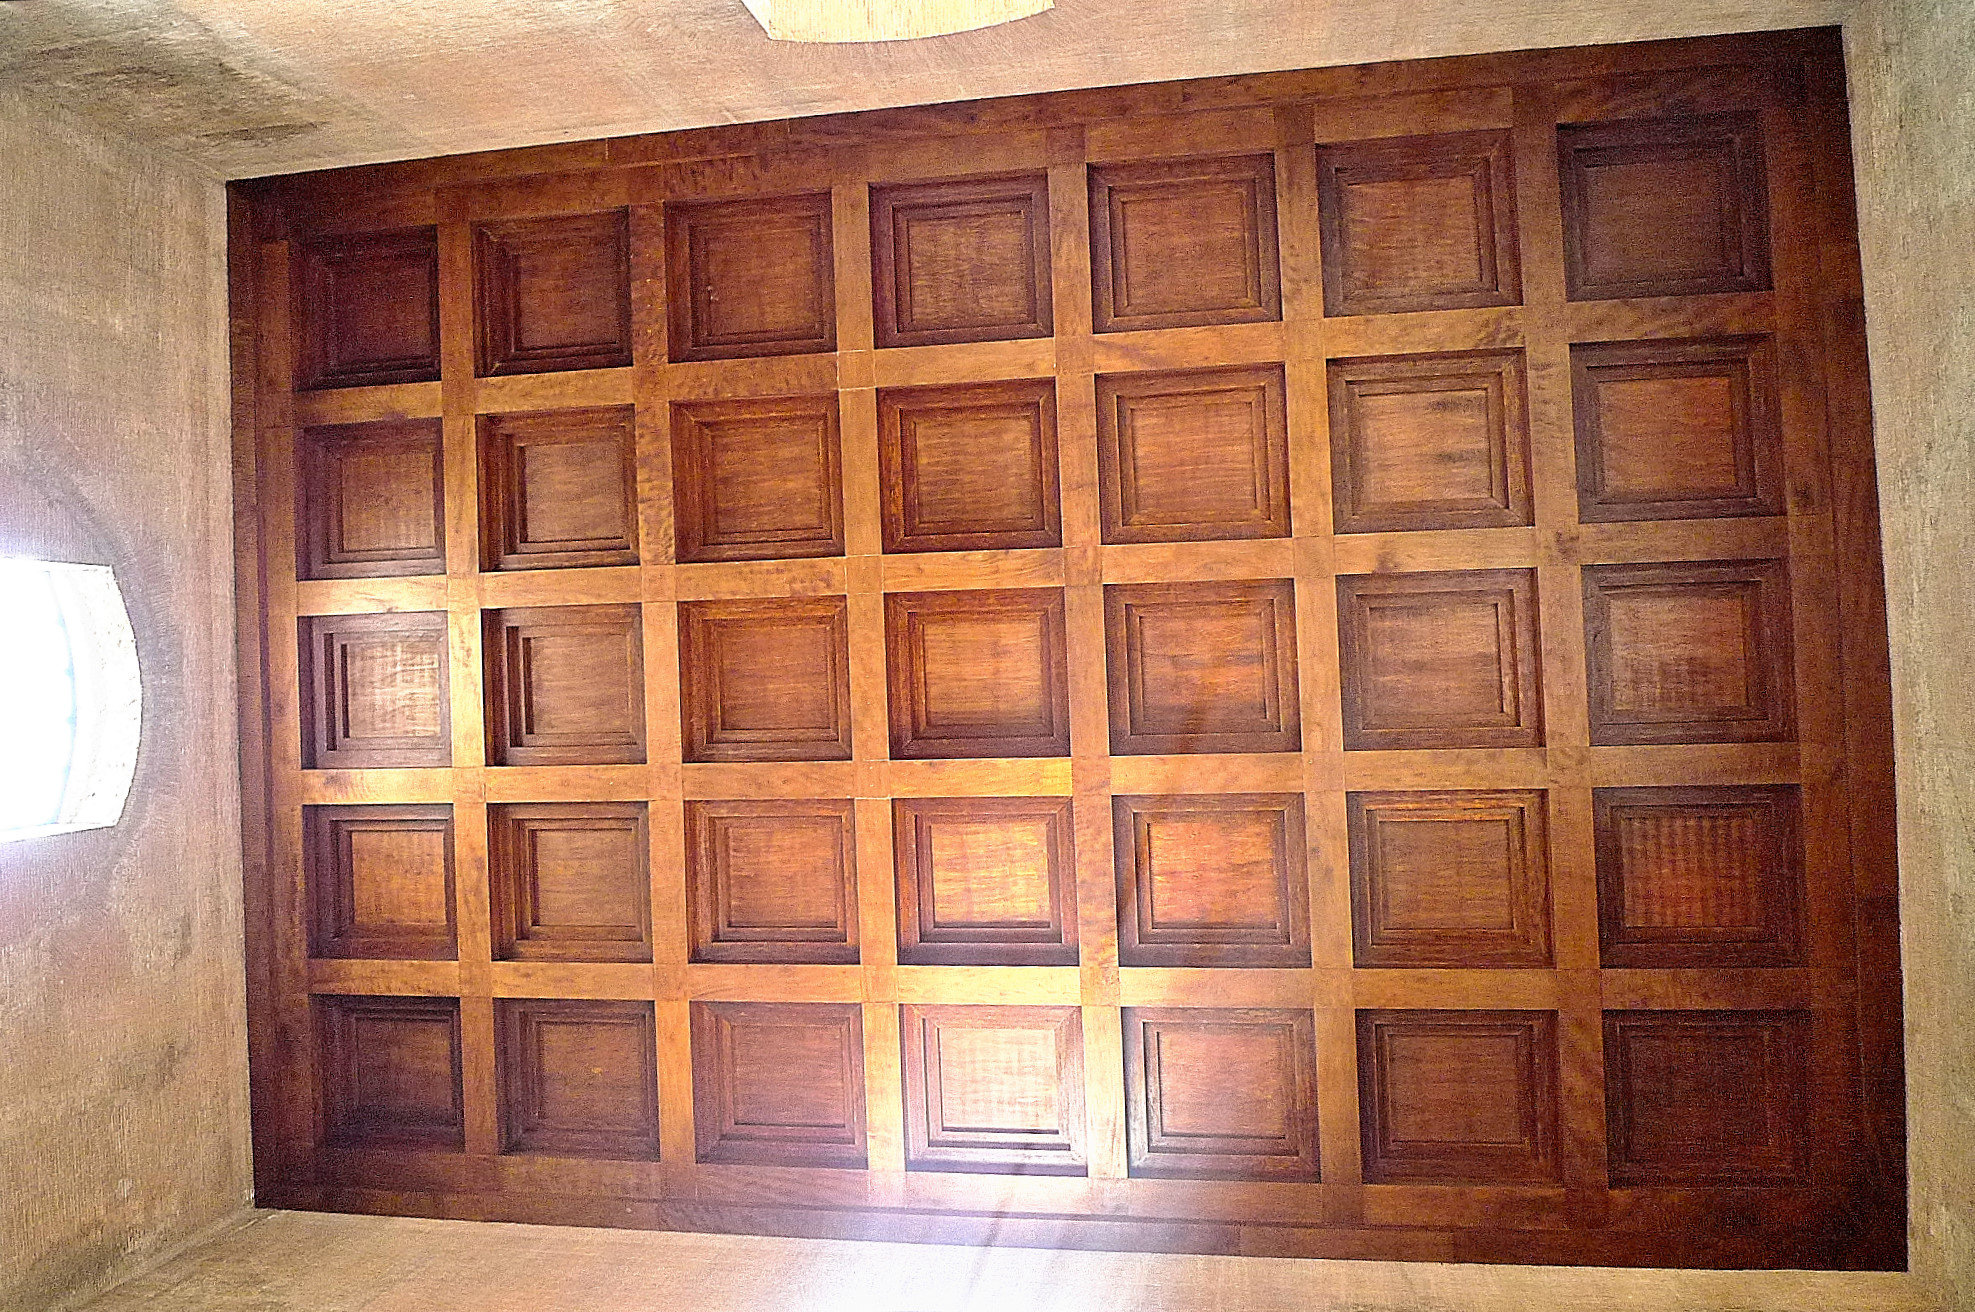 Ceiling of Curia